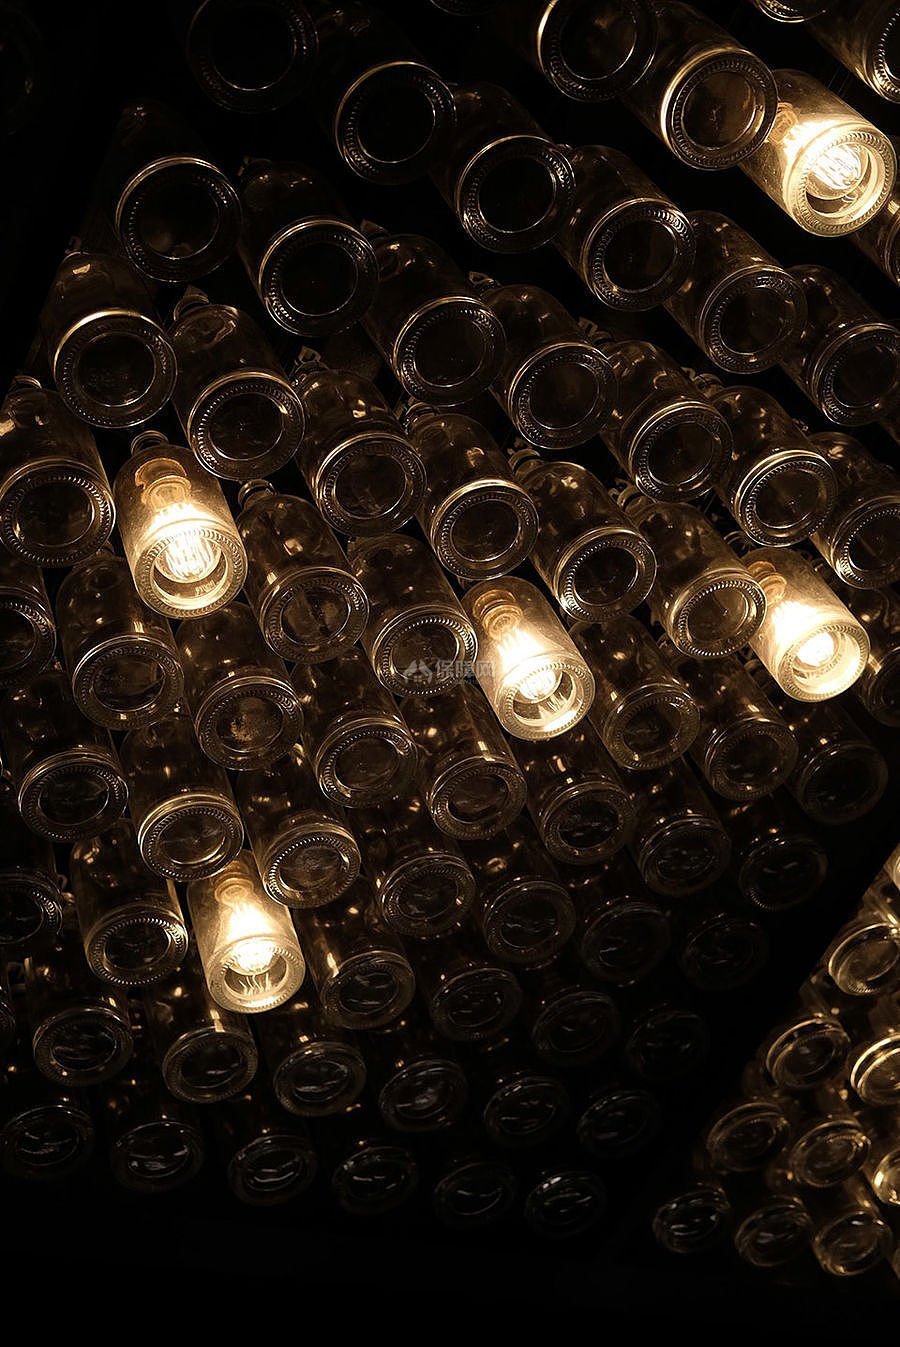 MILL乐堤港店高端咖啡厅创意灯具设计